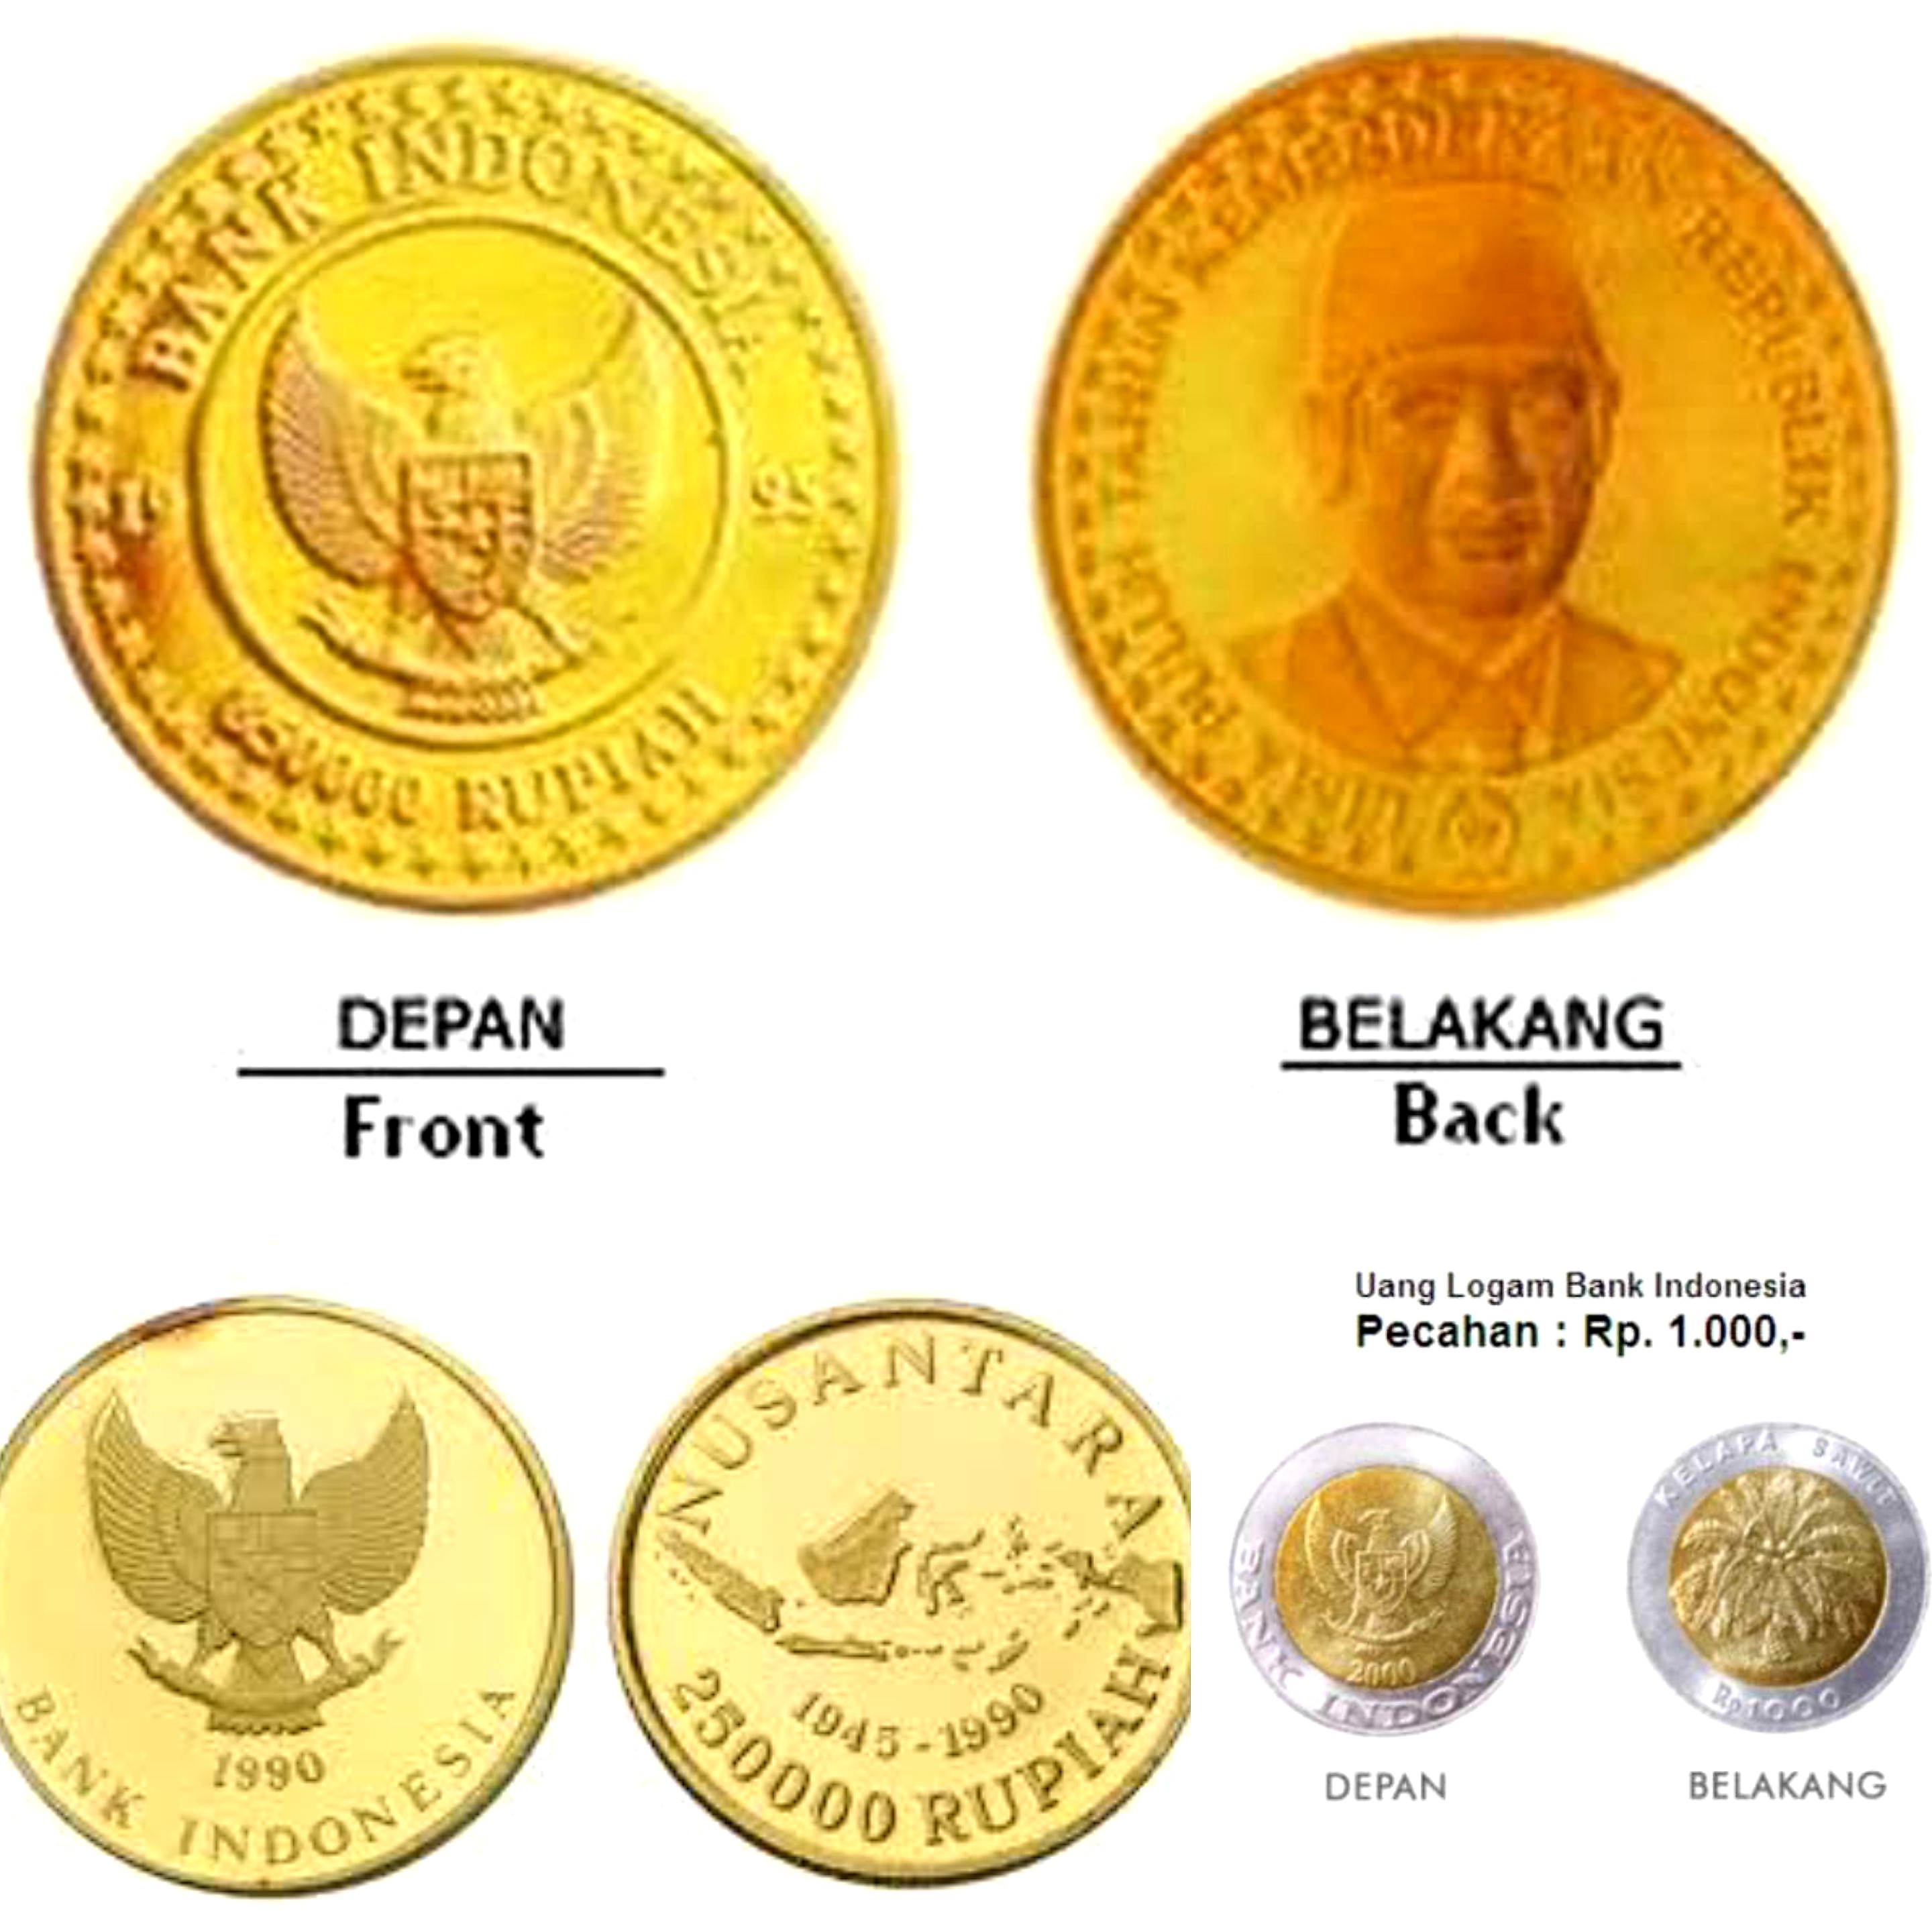 Bukan Kuningan Atau Tembaga. 3 Uang Koin Emas Keluaran Bank Indonesia Memang Ada. Ini Buktinya!